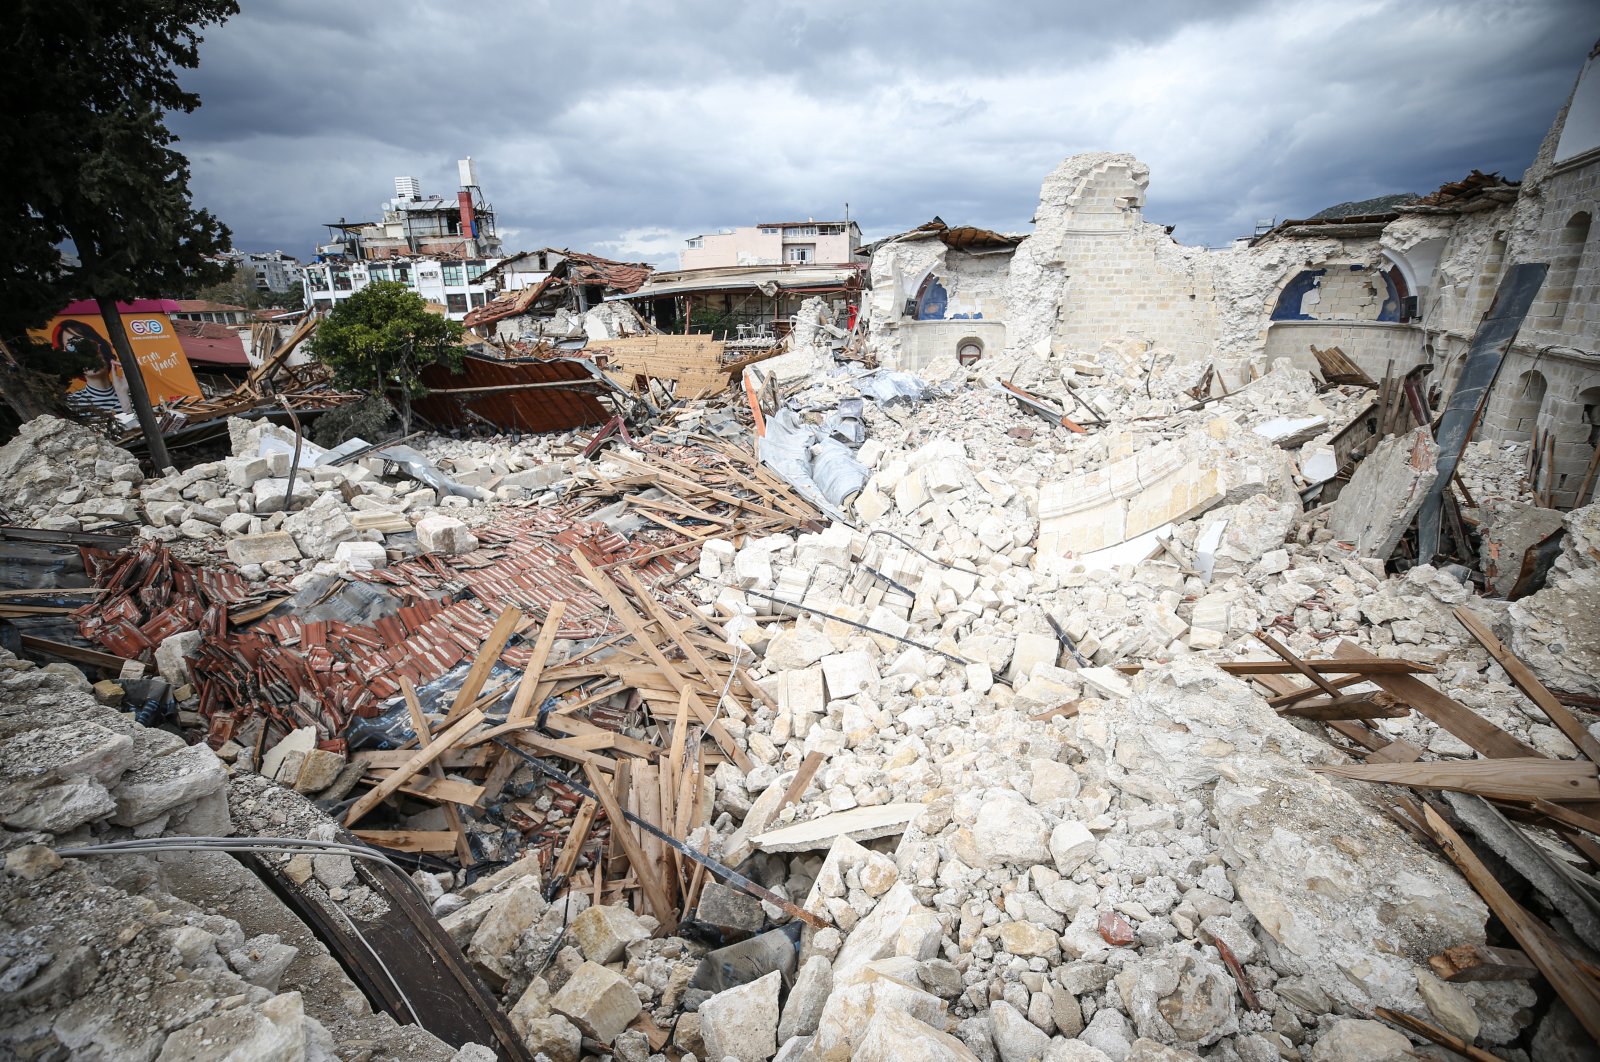 Survei darat dilakukan di 154 titik di zona gempa Türkiye